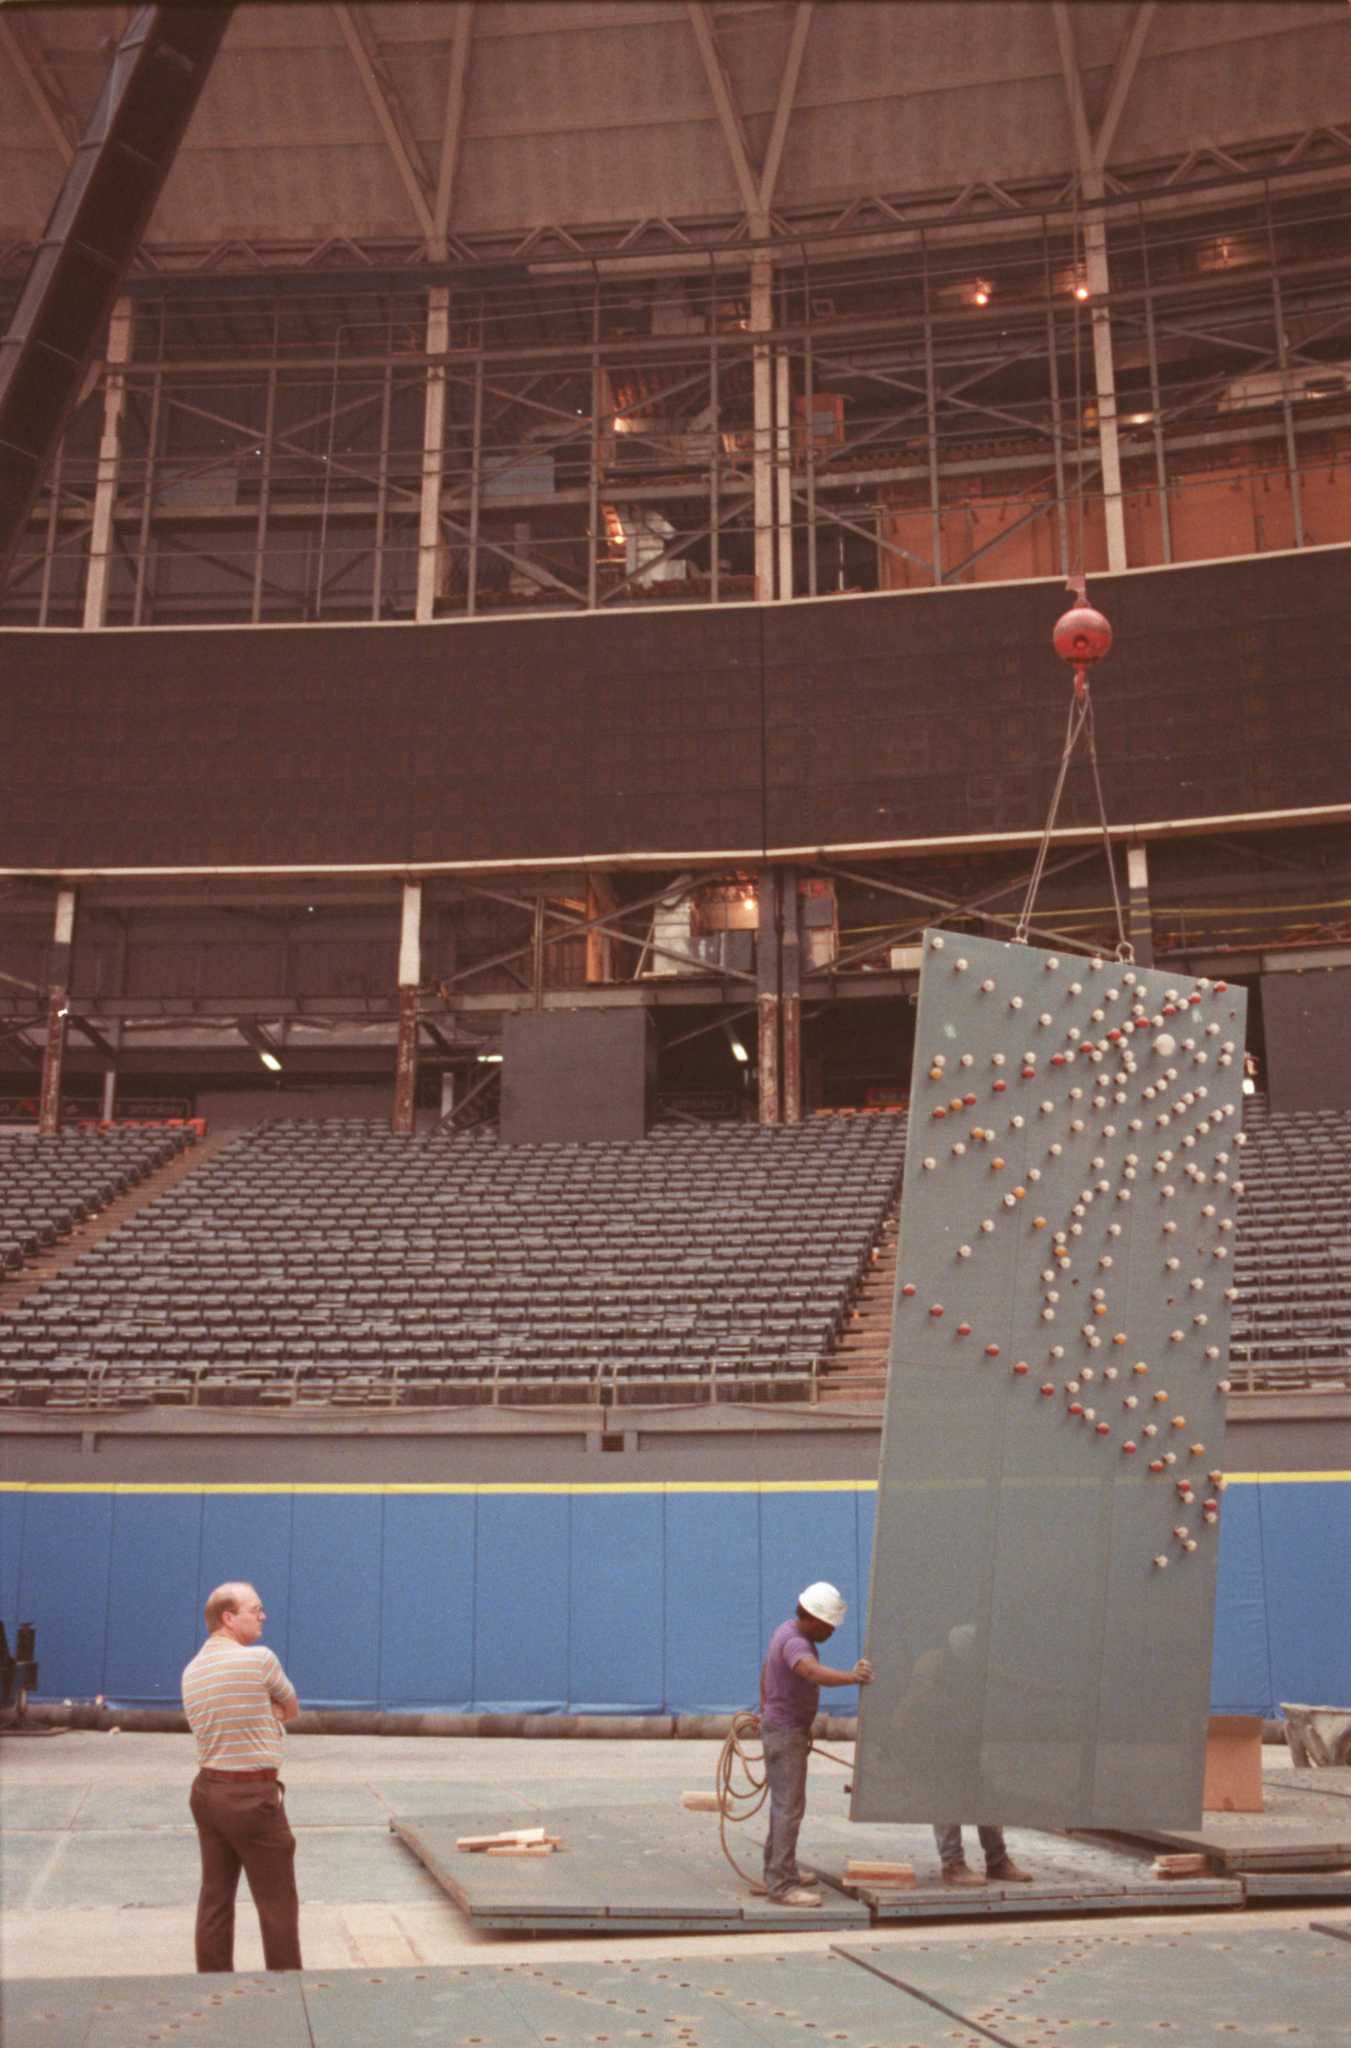 File:Astrodome scoreboard 1969.jpg - Wikipedia